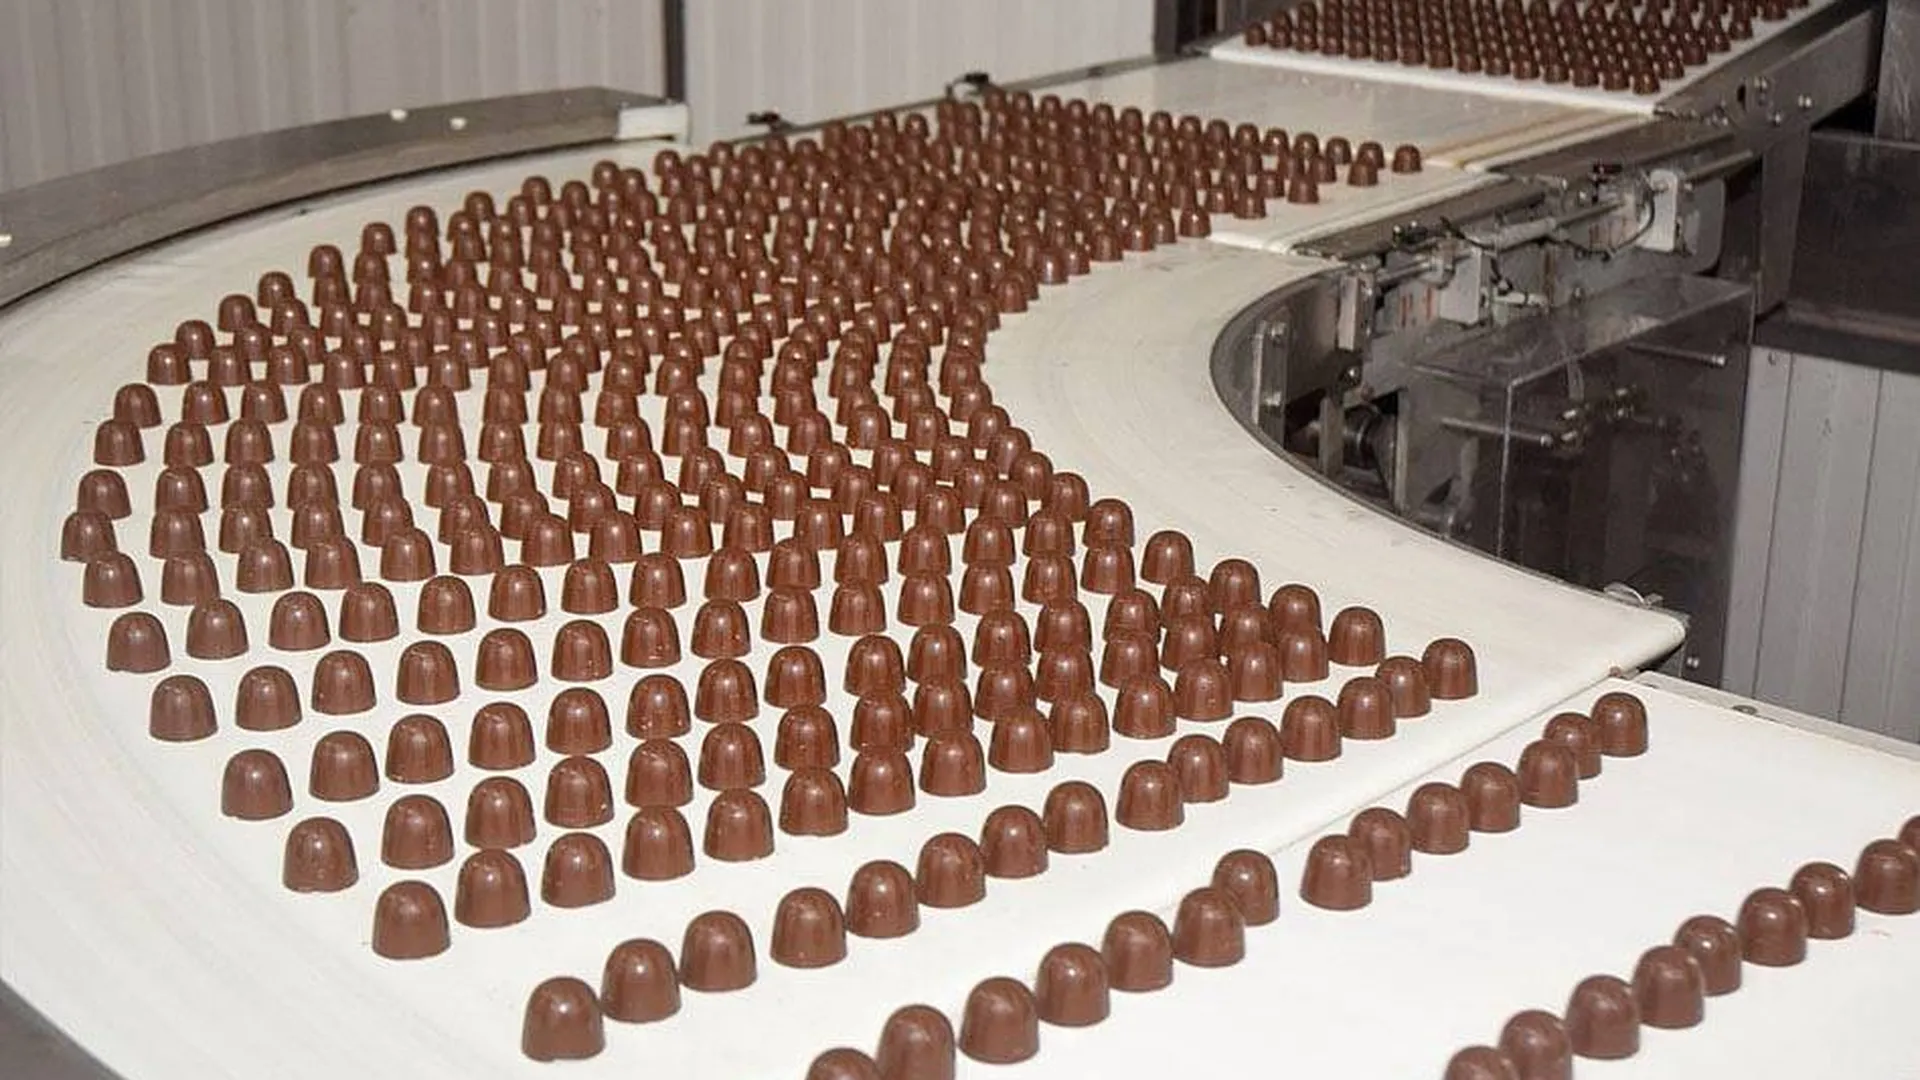 Bachmann шоколадная фабрика. Егорьевск шоколадная фабрика. Егорьевск шоколадная фабрика победа экскурсии. Фабрика шоколада экскурсия Егорьевск. Егорьевская кондитерская фабрика победа.